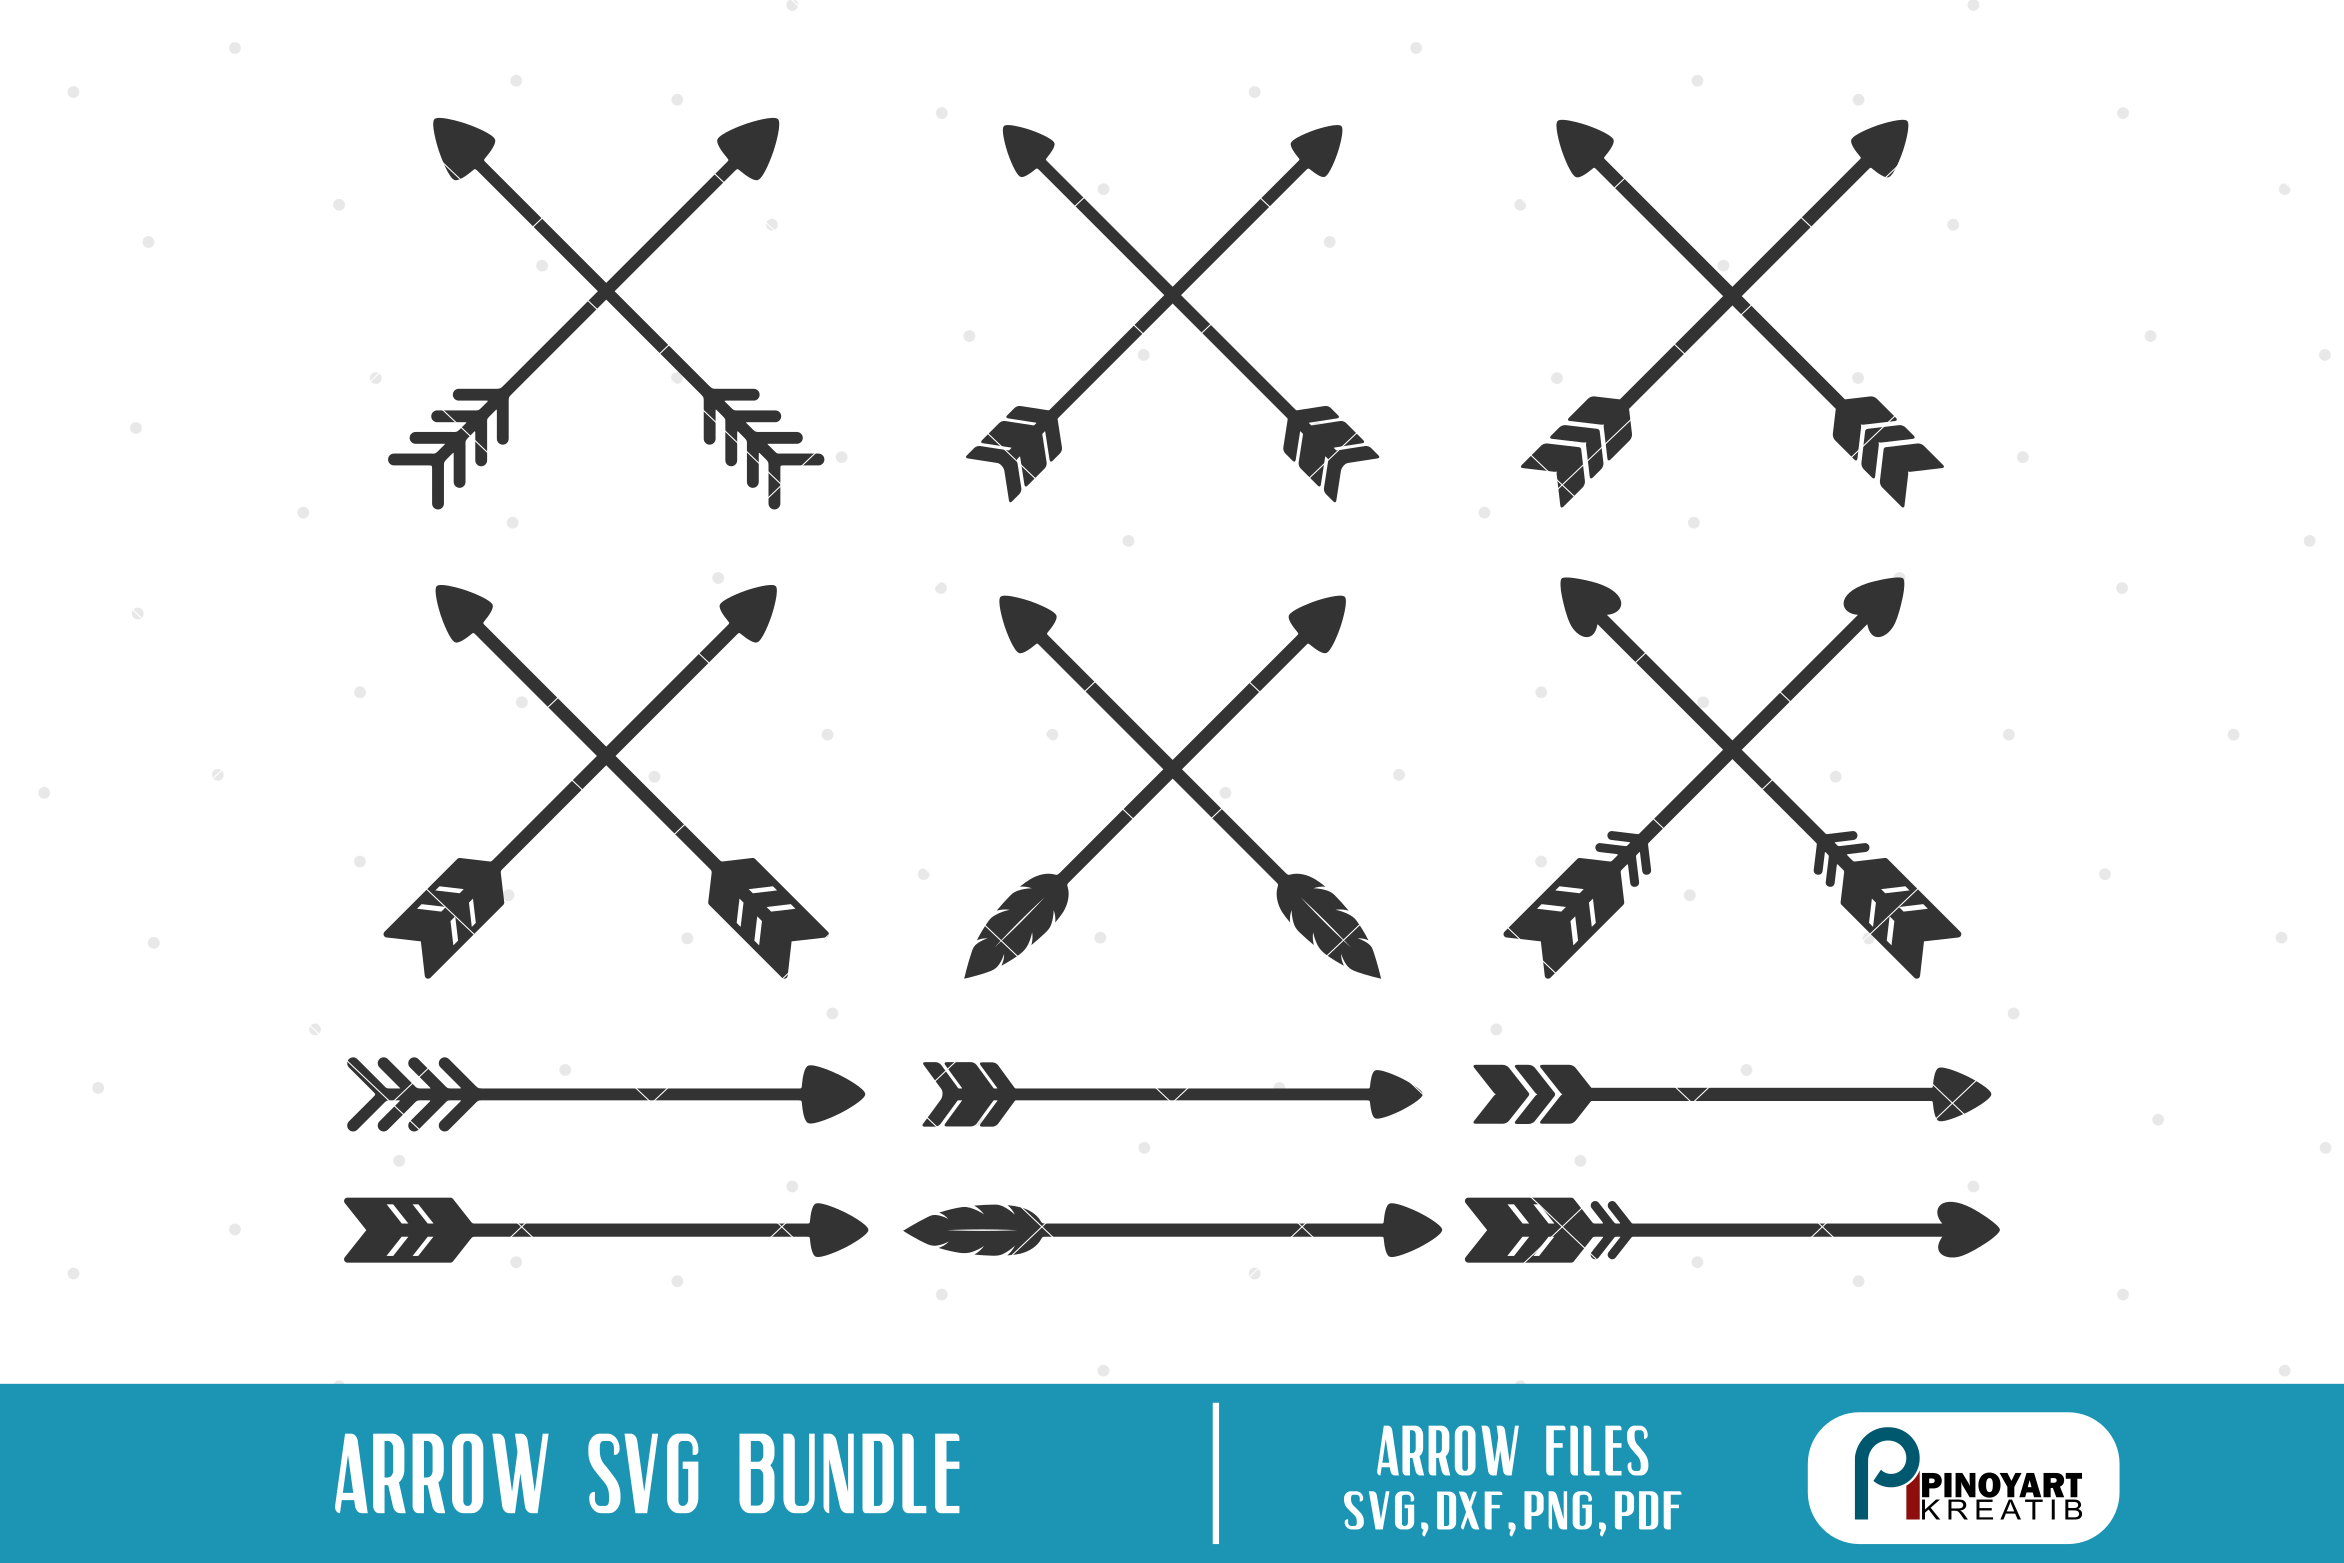 Download Arrow SVG Bundle - arrow vector files